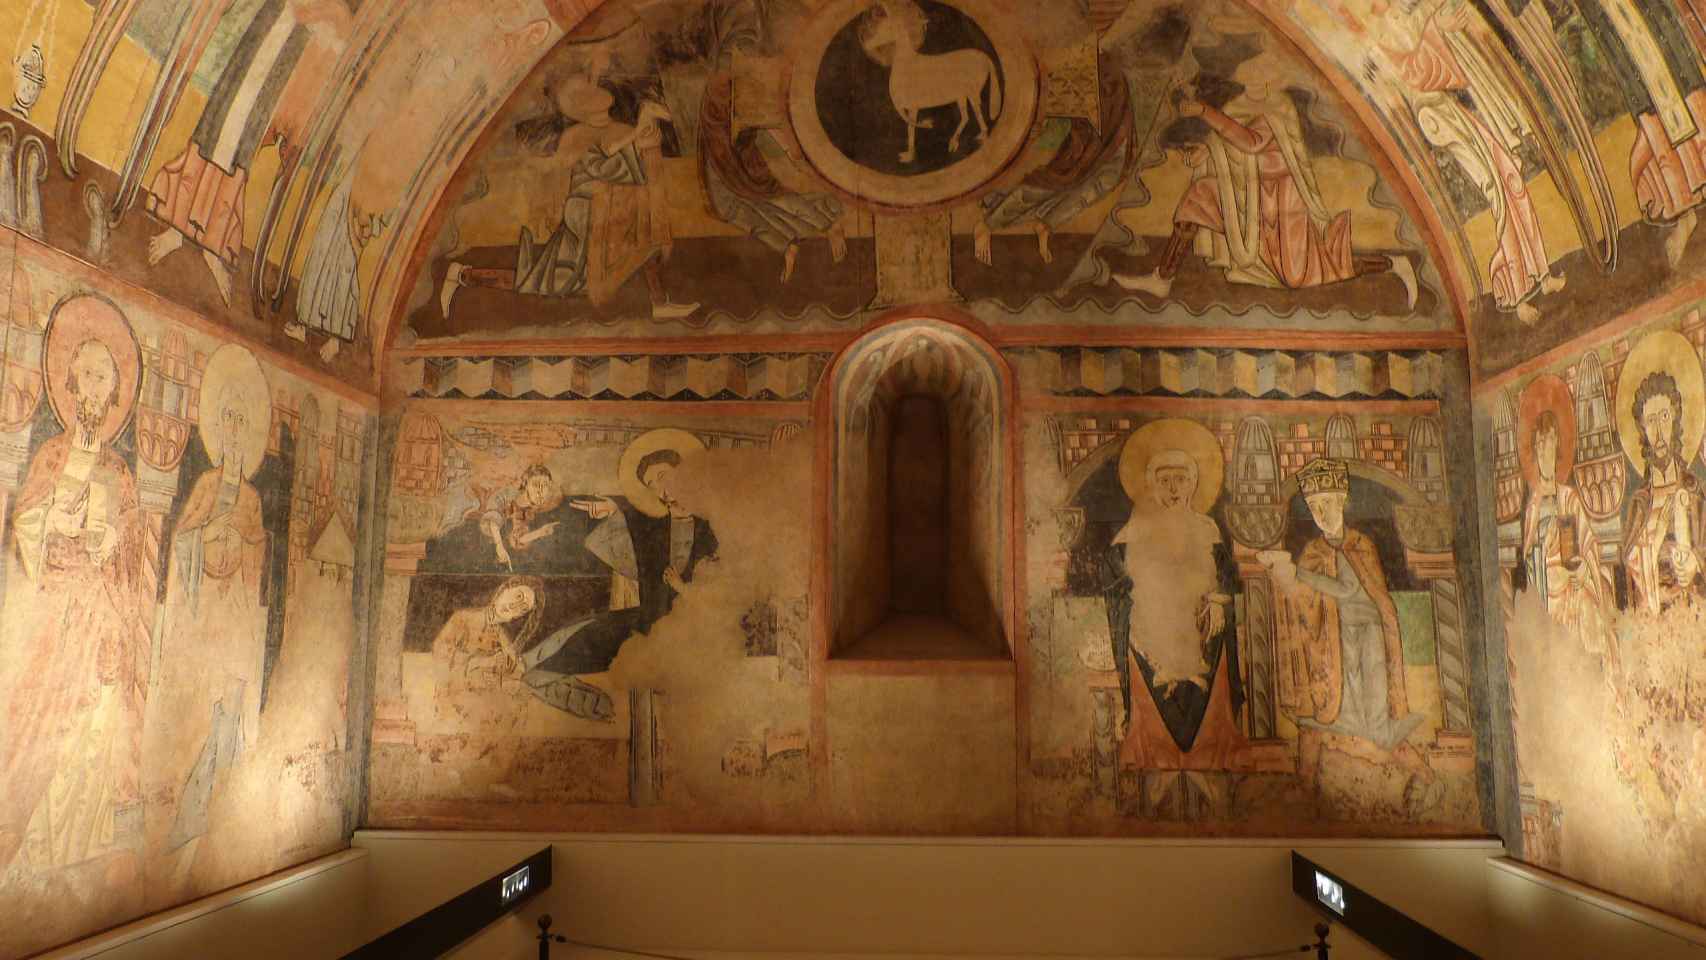 Pintura mural de la ermita de la Vera Cruz de Maderuelo. Cedidas por El Museo del Prado